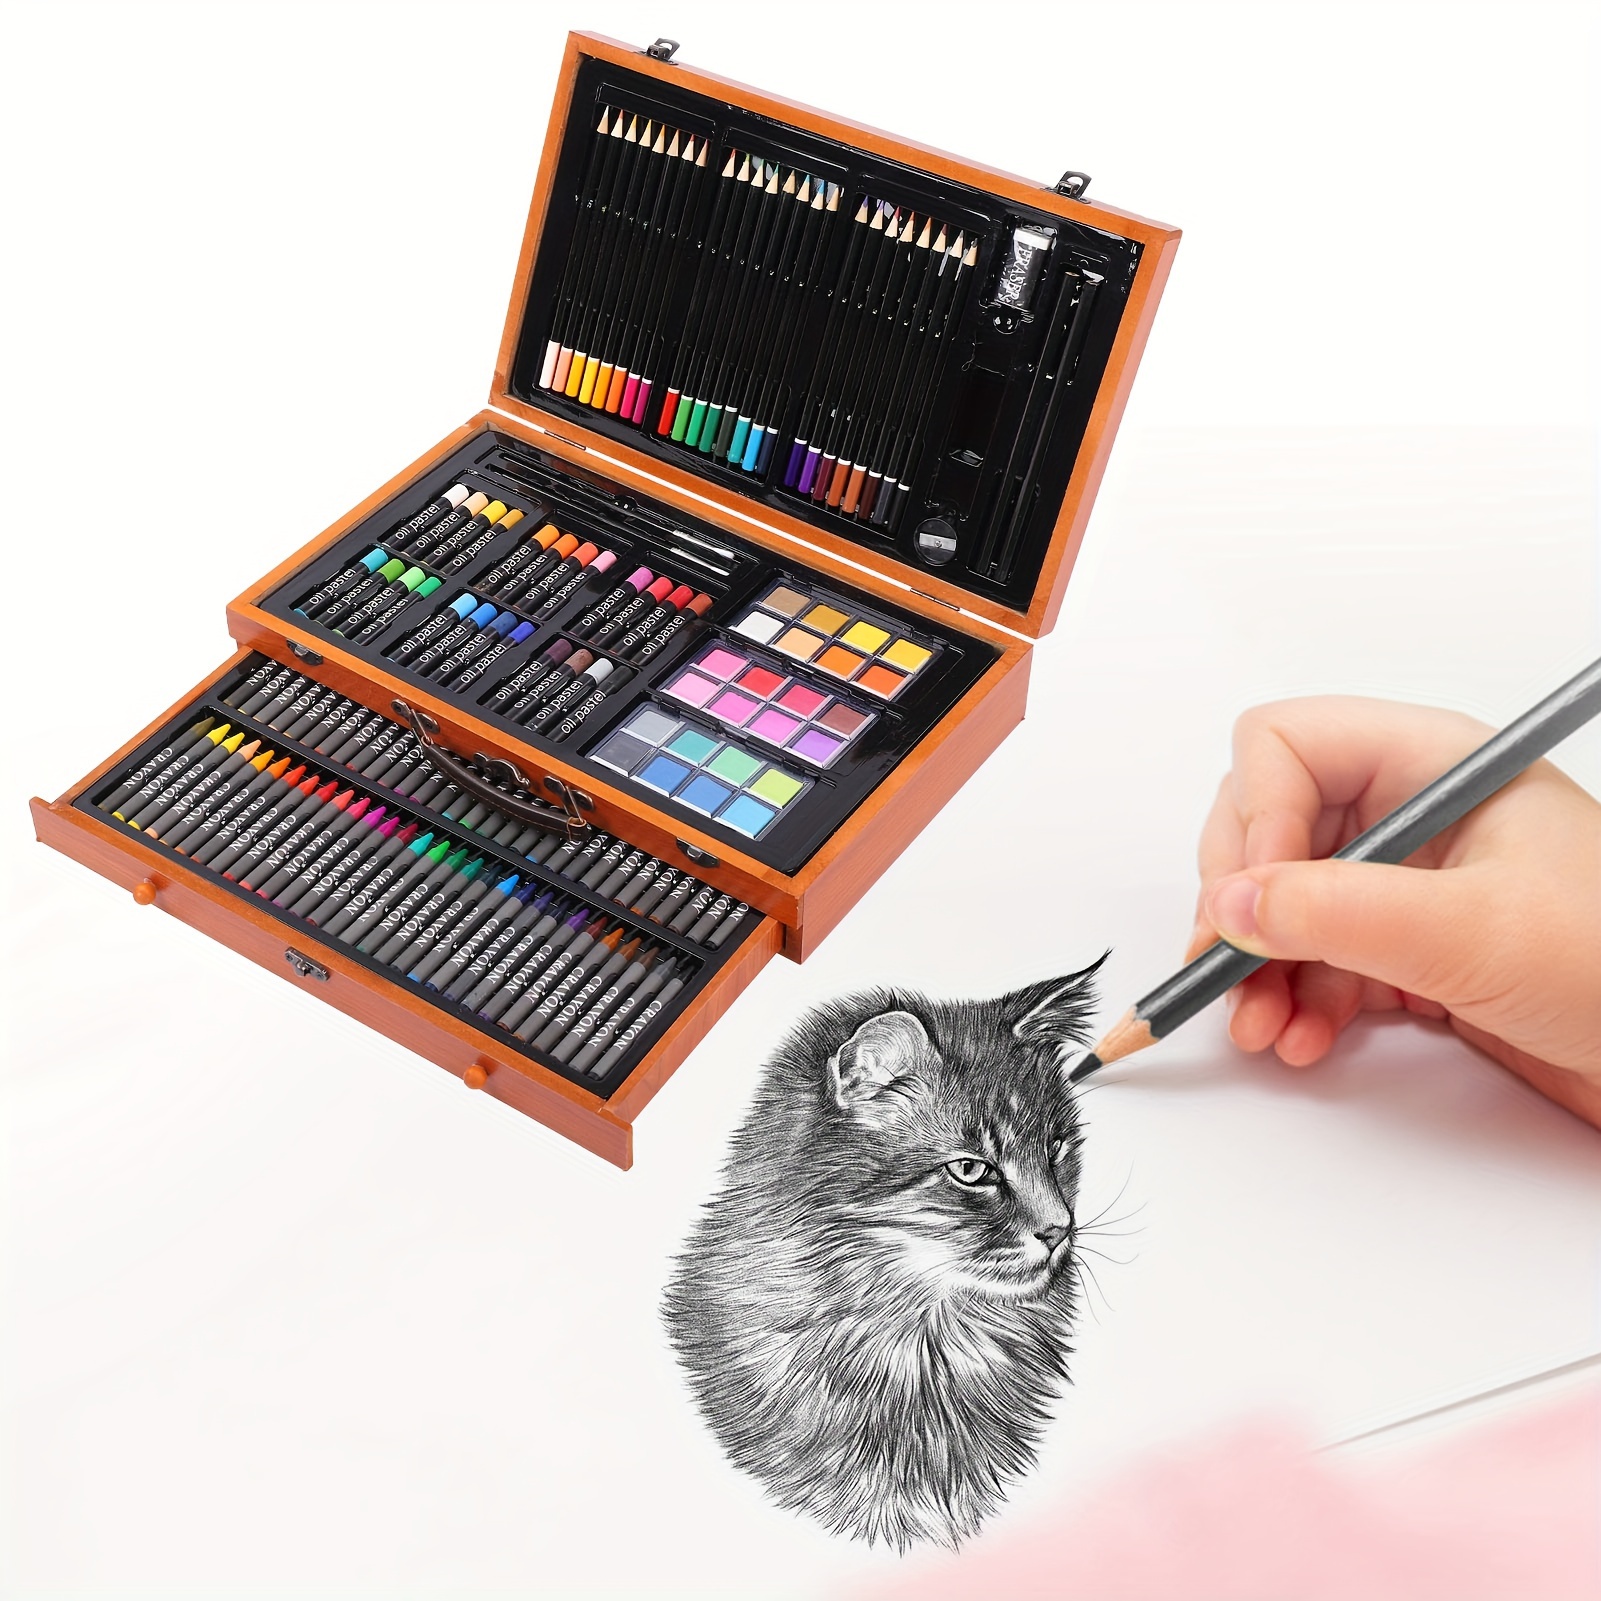 145PCS Set de Arte Profesional,Kit de Dibujo,Kit de Arte Profesional  Plegable,Incluye Crayones, Acuarelas Y LáPices De Colores Nuevas  Herramientas de